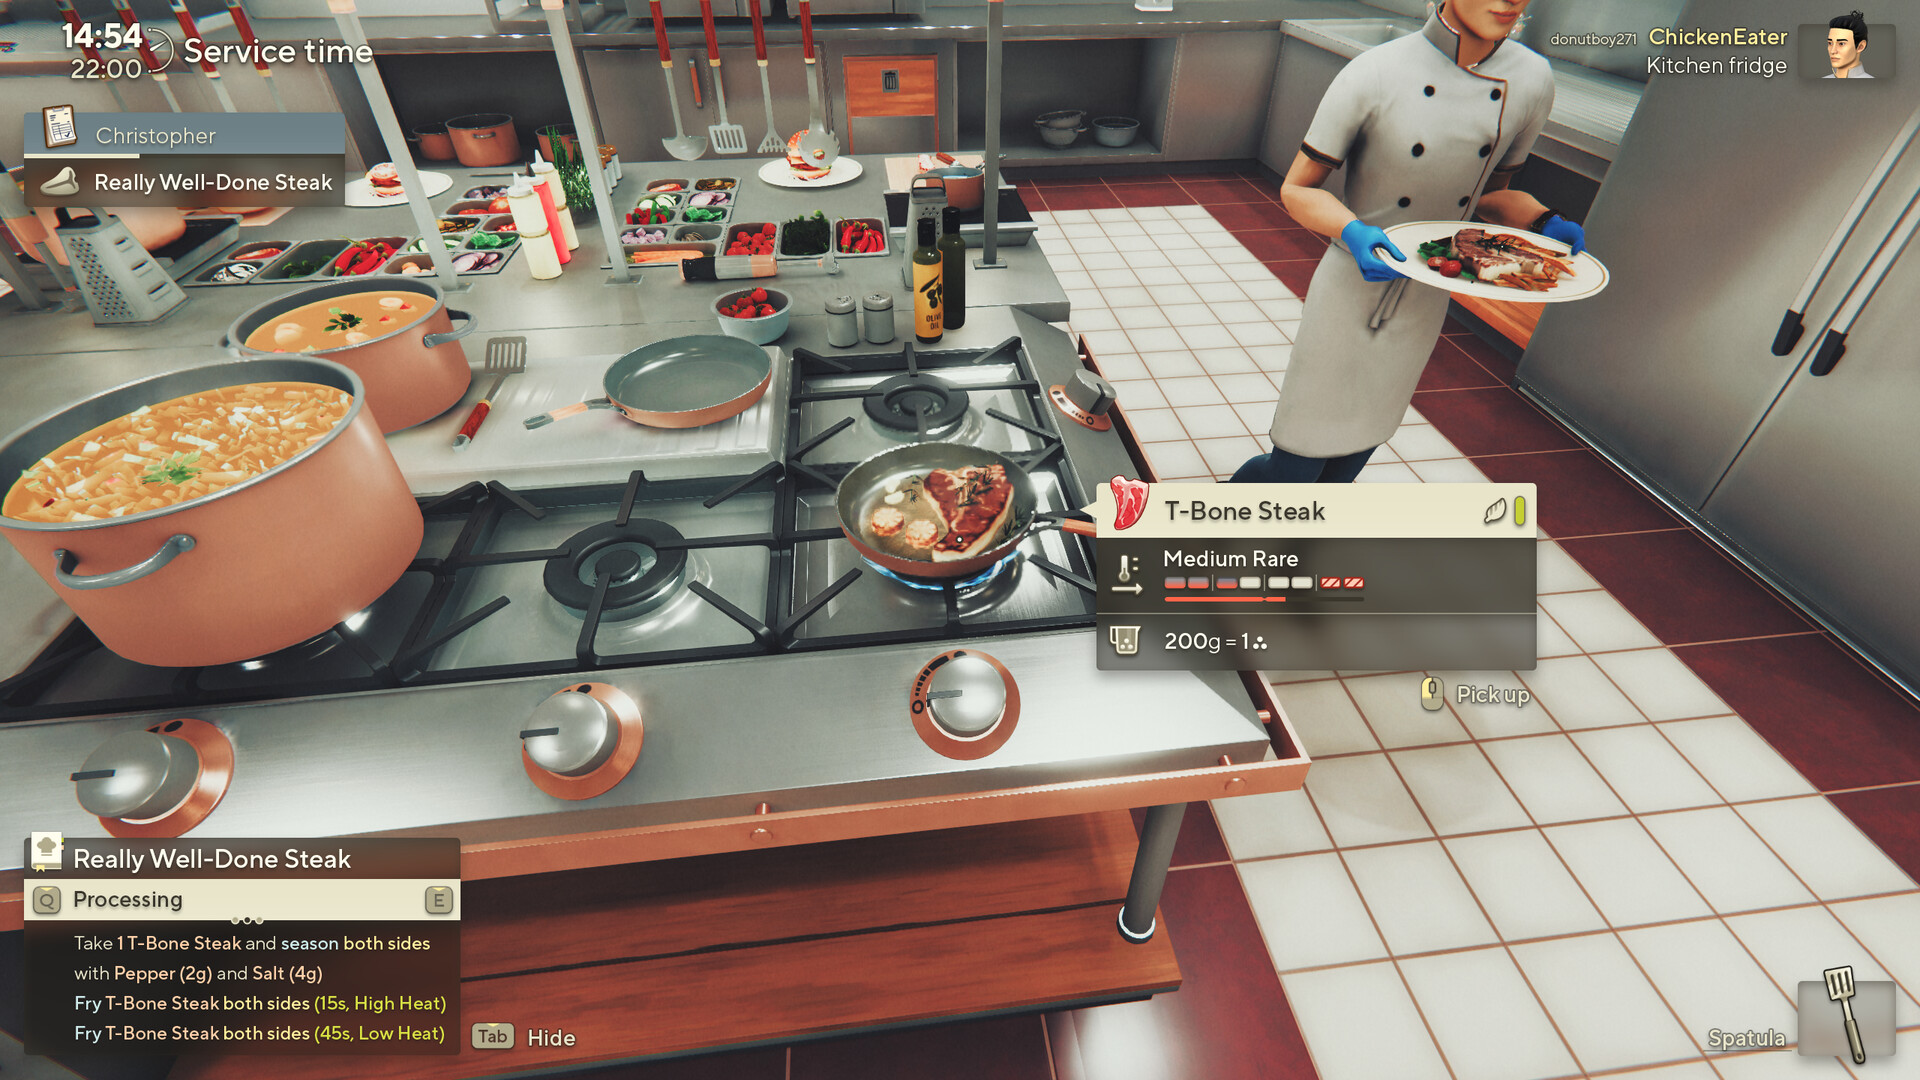 Cooking Simulator: Estos son los requisitos mínimos y recomendados